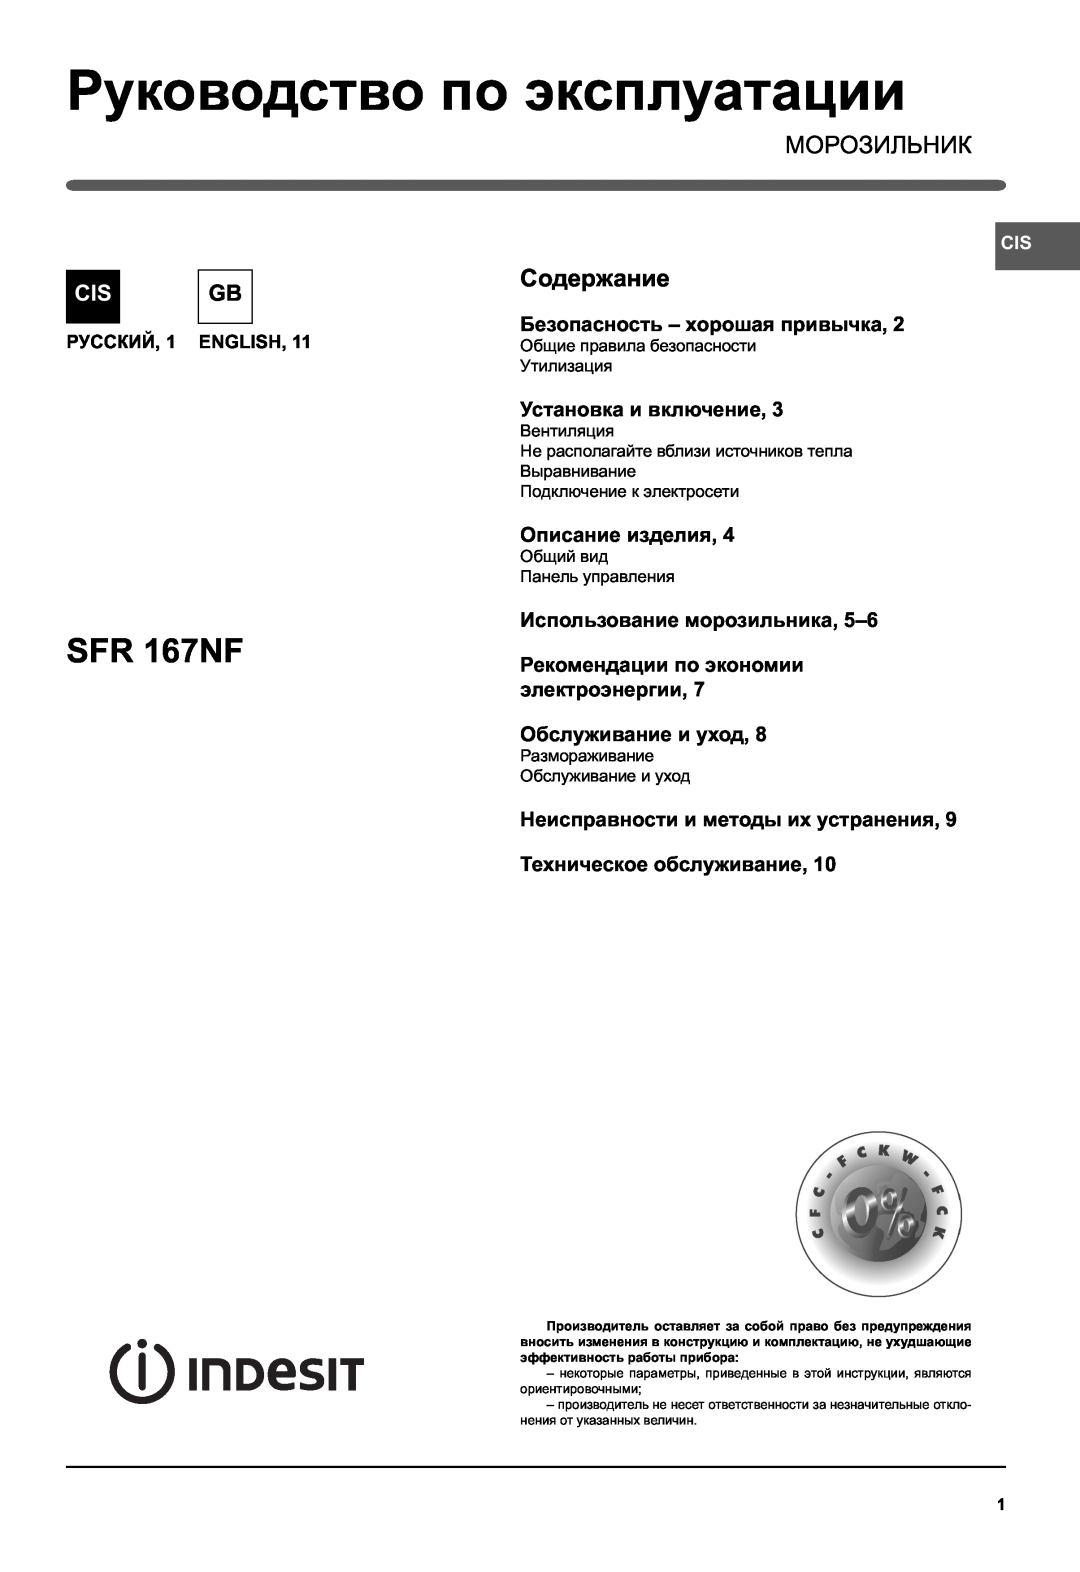 Indesit SFR 167NF manual Руководство по эксплуатации, Морозильник, Содержание, Установка и включение, Описание изделия 